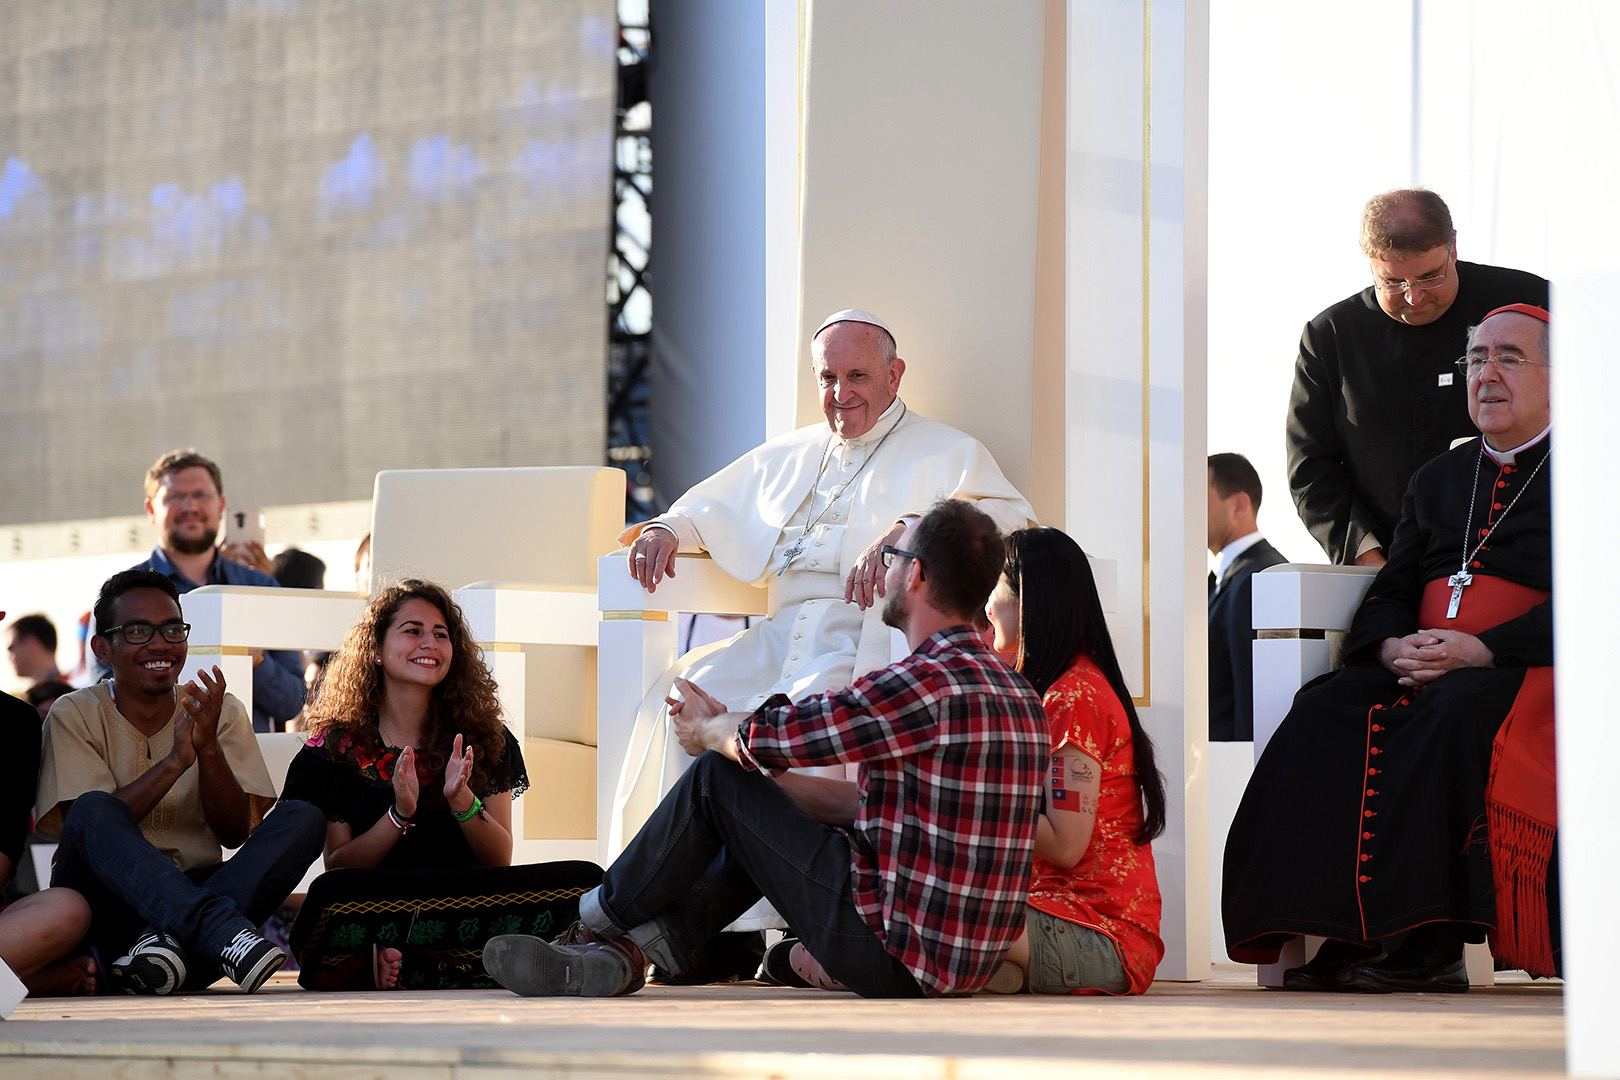 Orędzie Papieża Franciszka na XXXIII Światowy Dzień Młodzieży